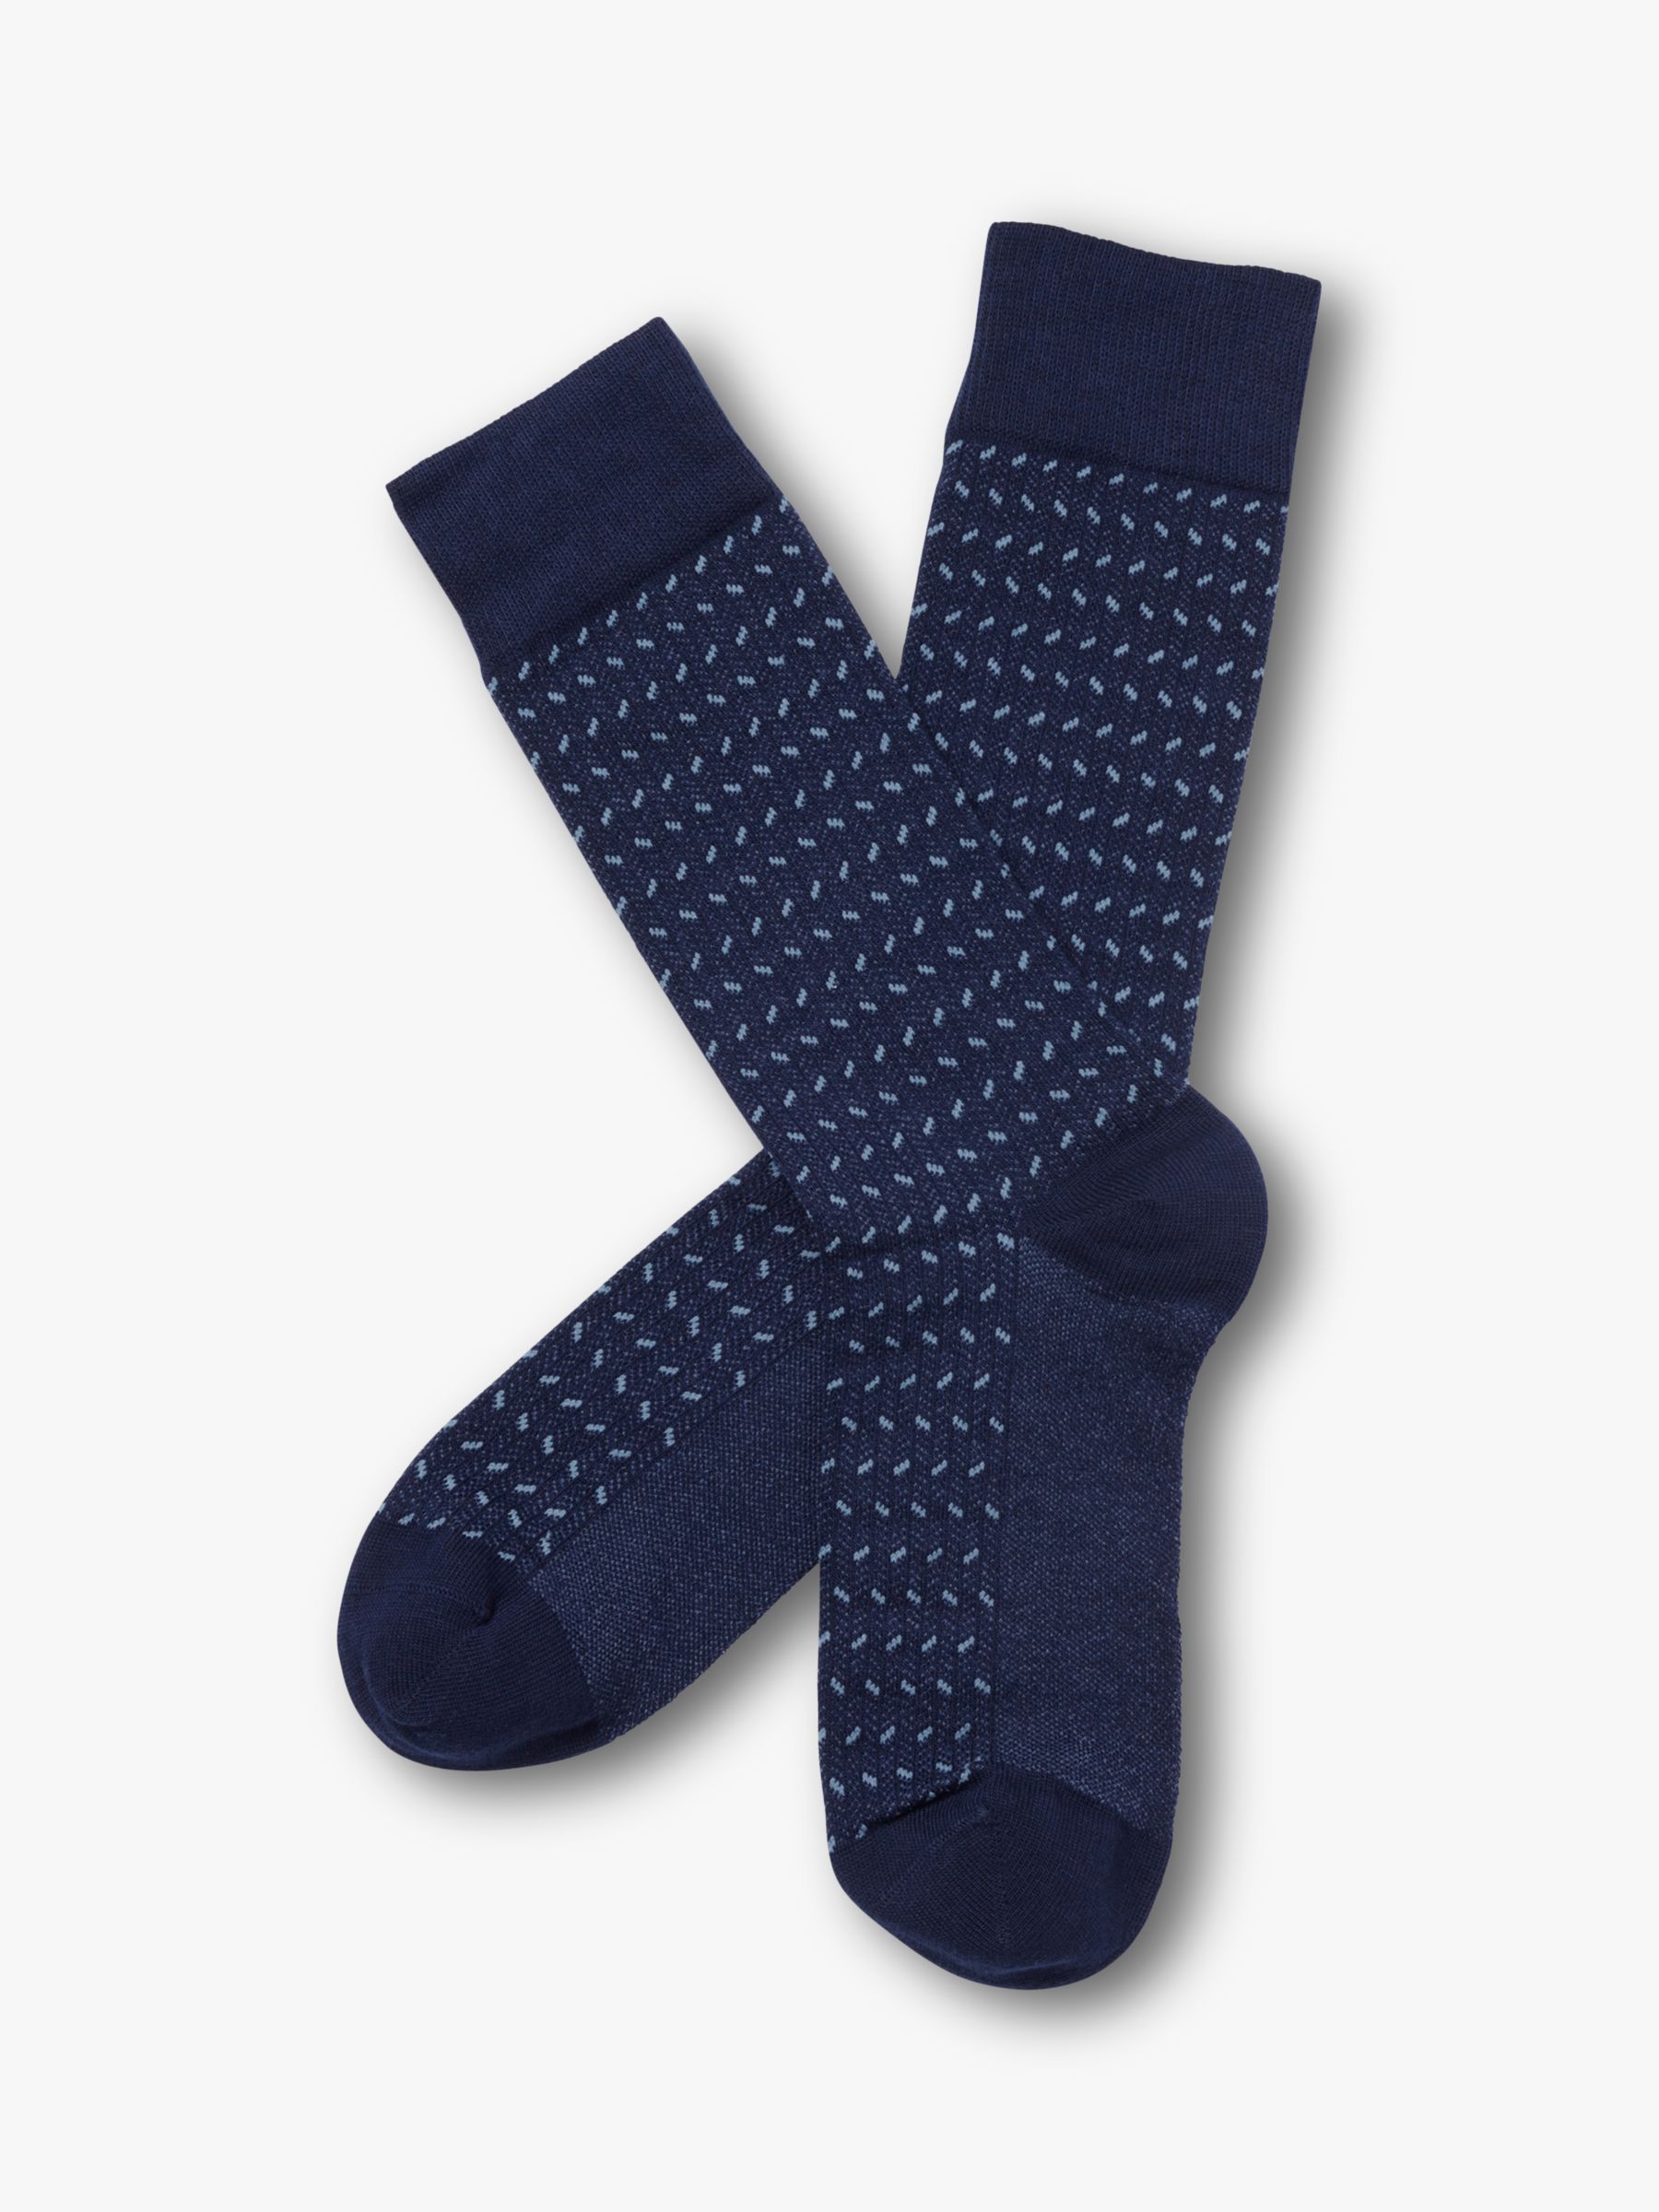 Charles Tyrwhitt Herringbone Socks, Denim Blue, M